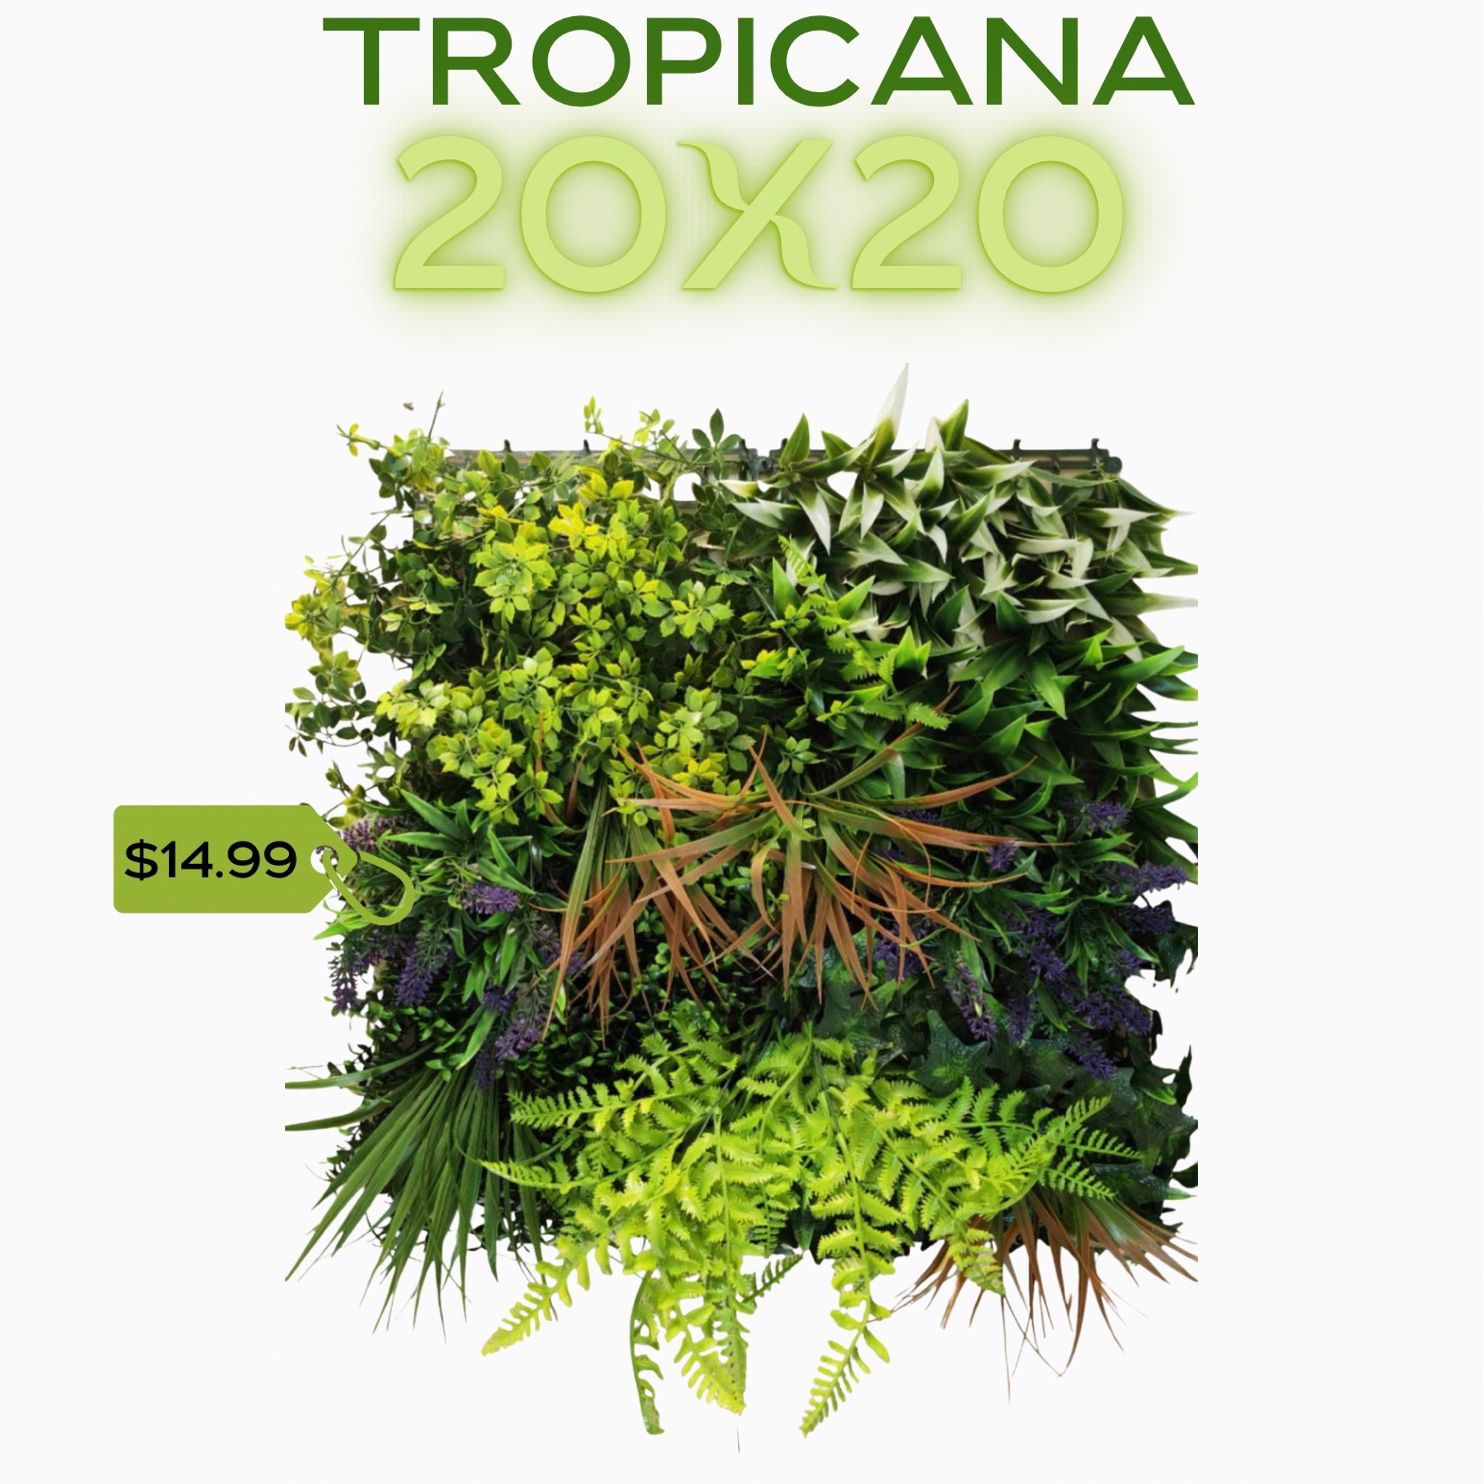 Ivy Tropicana 20x20 Panels 